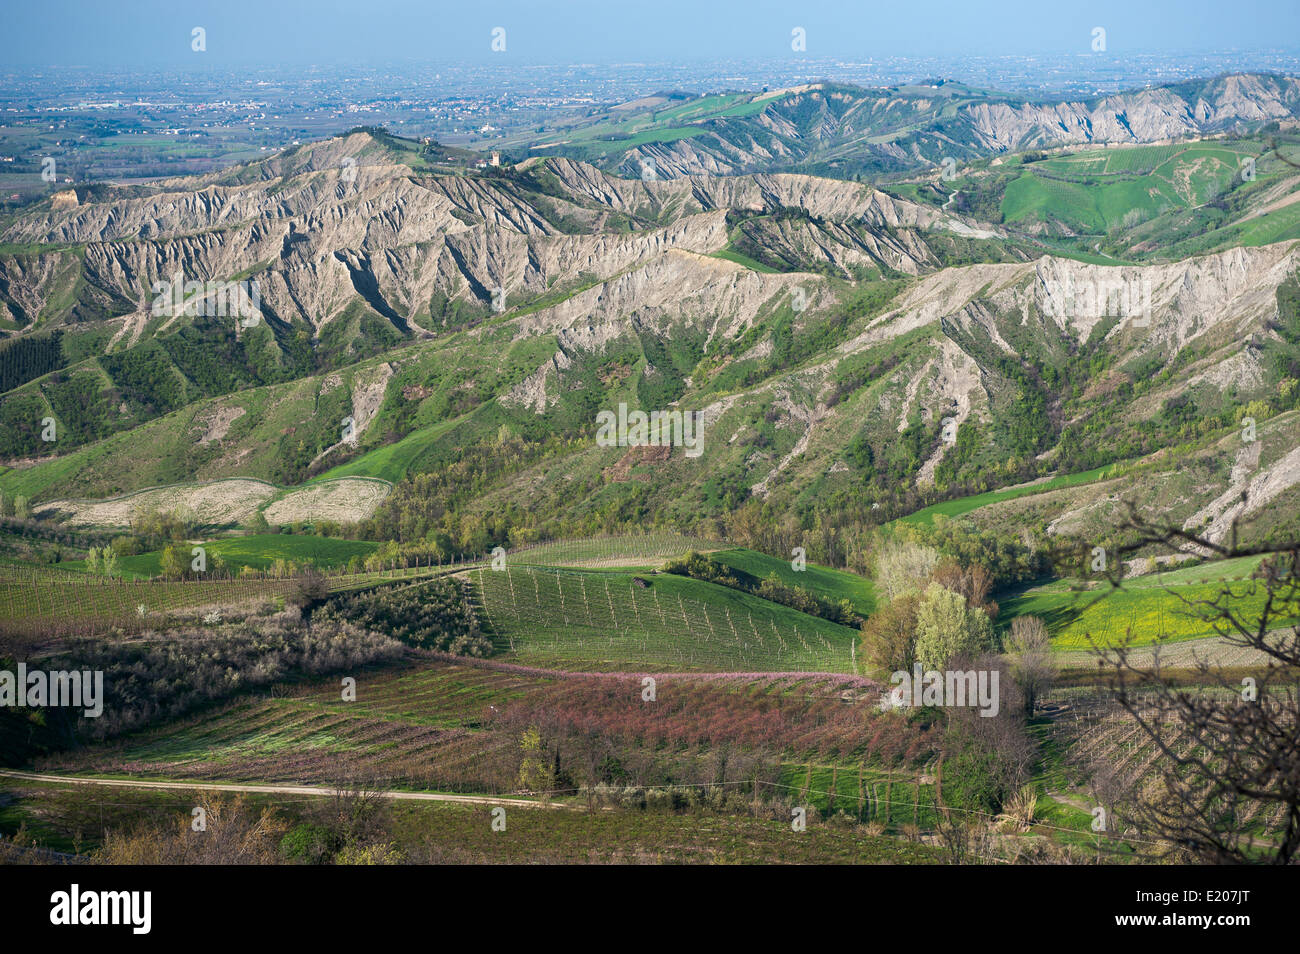 Colinas con la erosión de los valles, las estribaciones de las montañas de los Apeninos, detrás de la planicie costera del Adriático, Brisighella Foto de stock